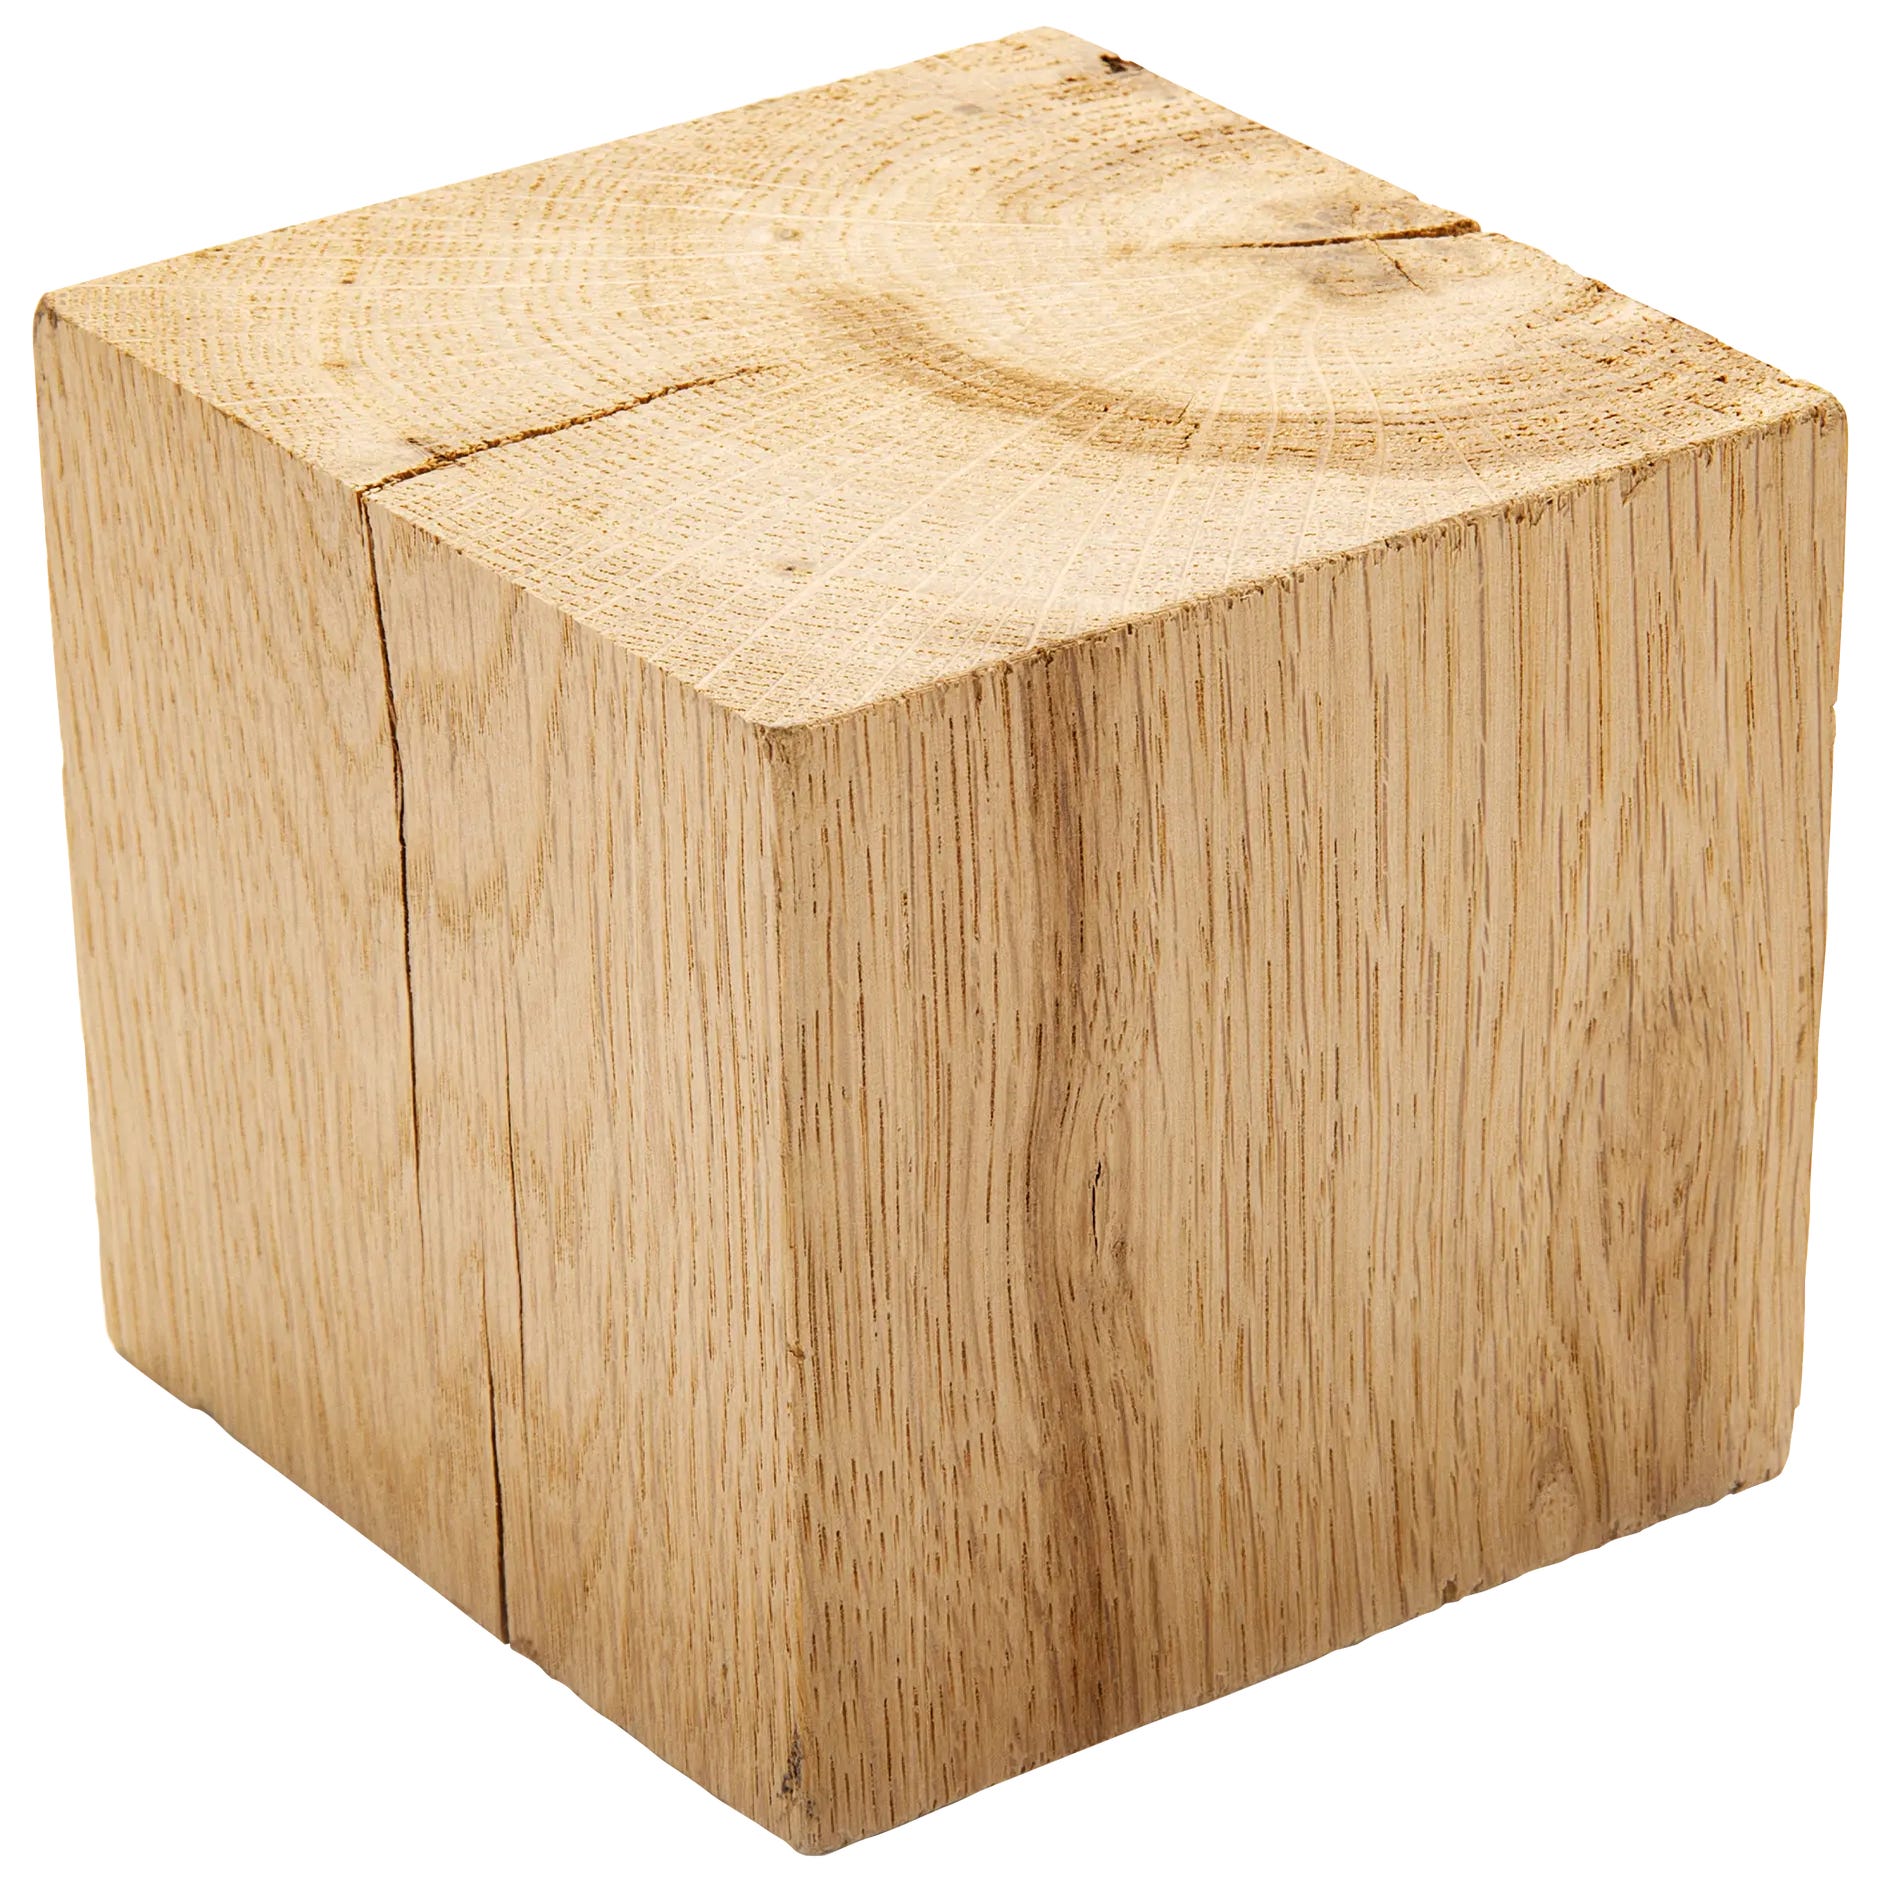 Cubo de roble macizo de 9x9x9 cm